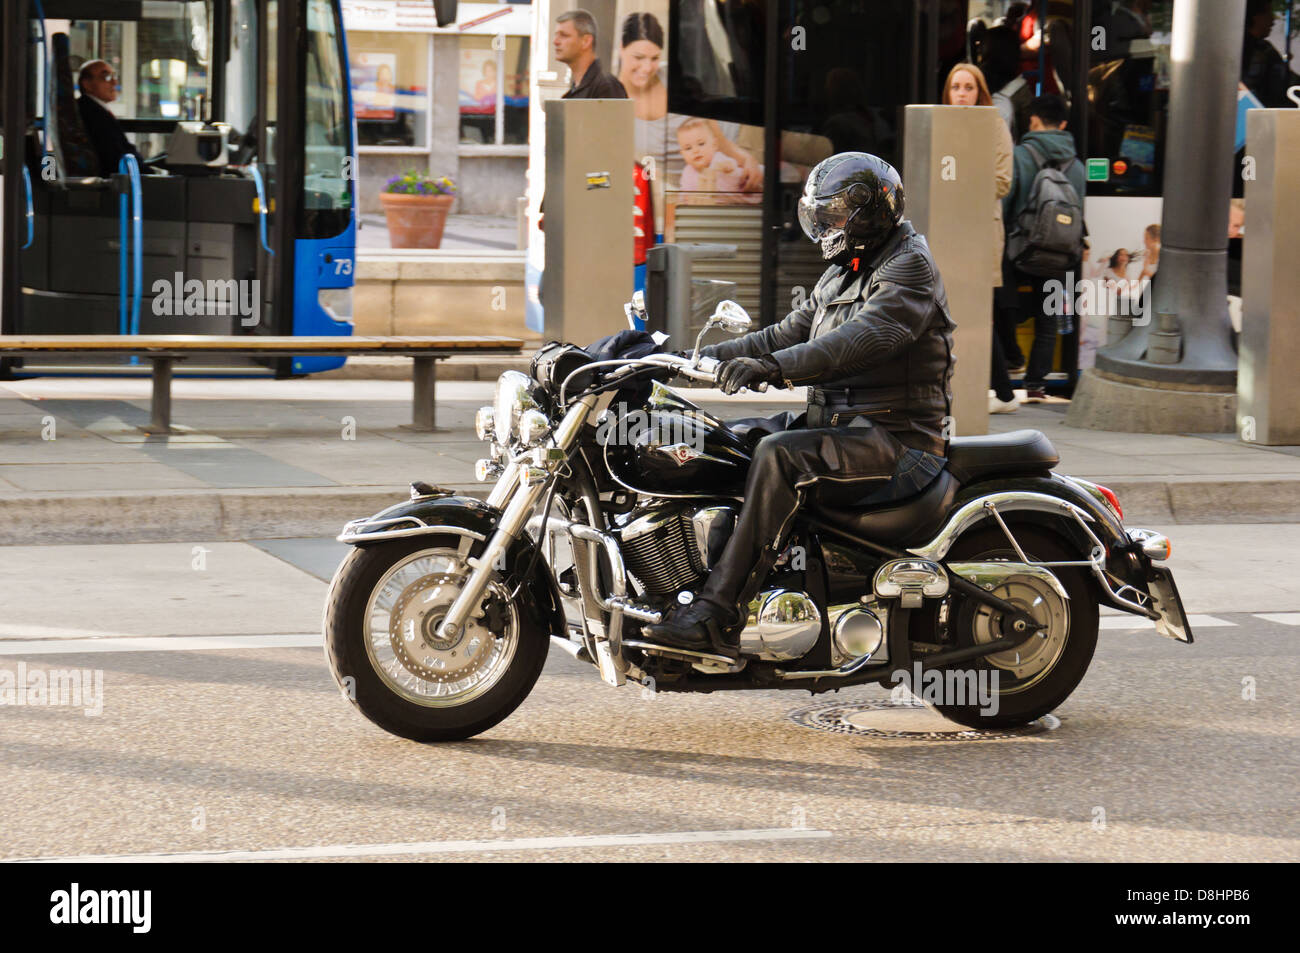 Motorrad Bilder zum Thema Motorrad Bekleidung